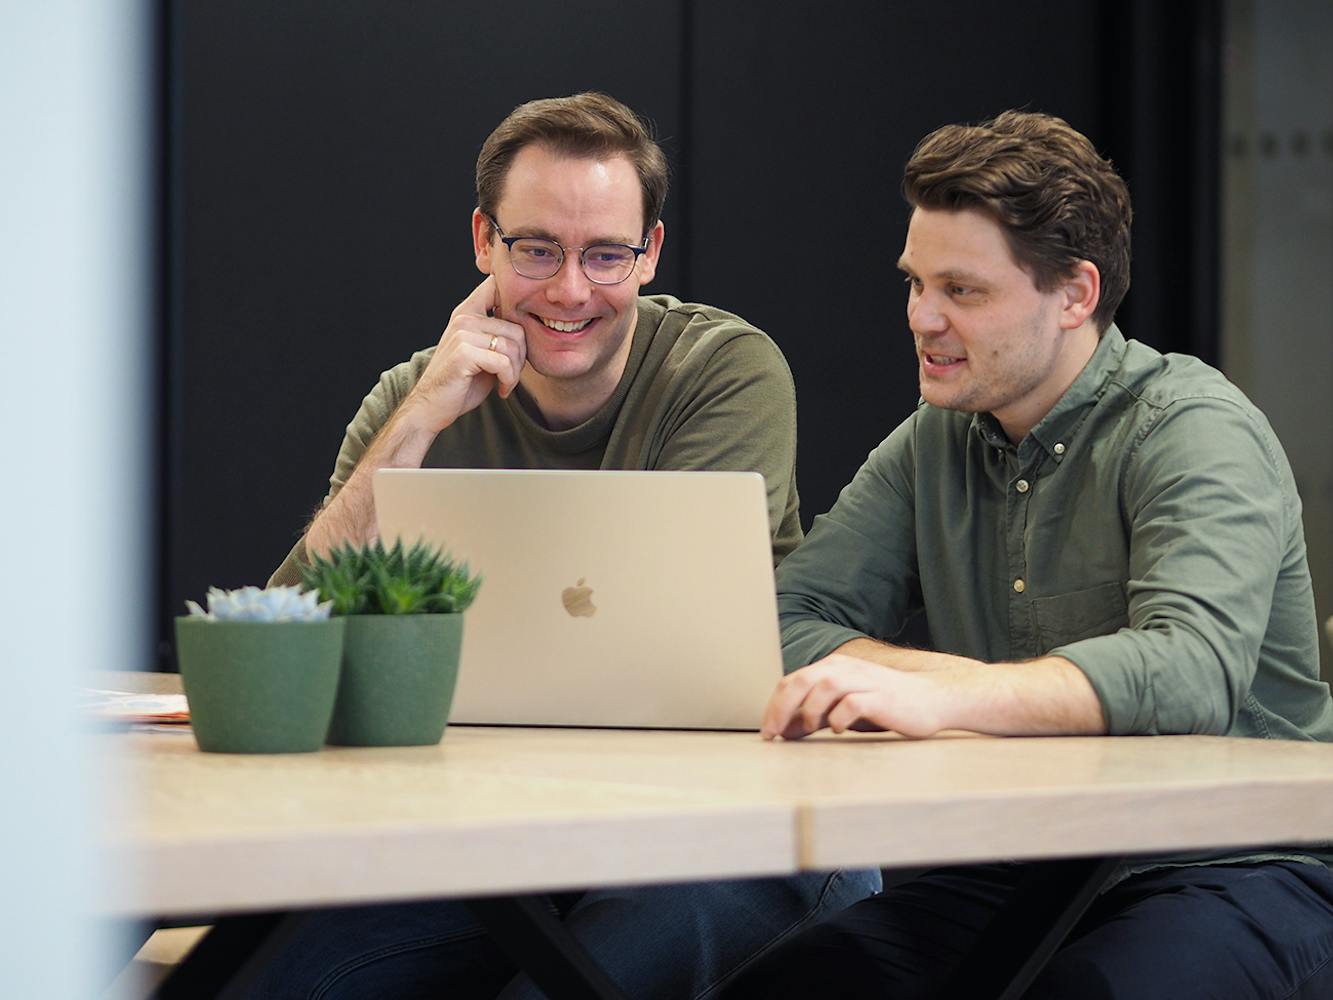 Stein Arne og Hans-Petter ser på en Mac og snakker seg imellom om tips til bedrfiter som vil markedsføre egne verdier på en positiv måte.